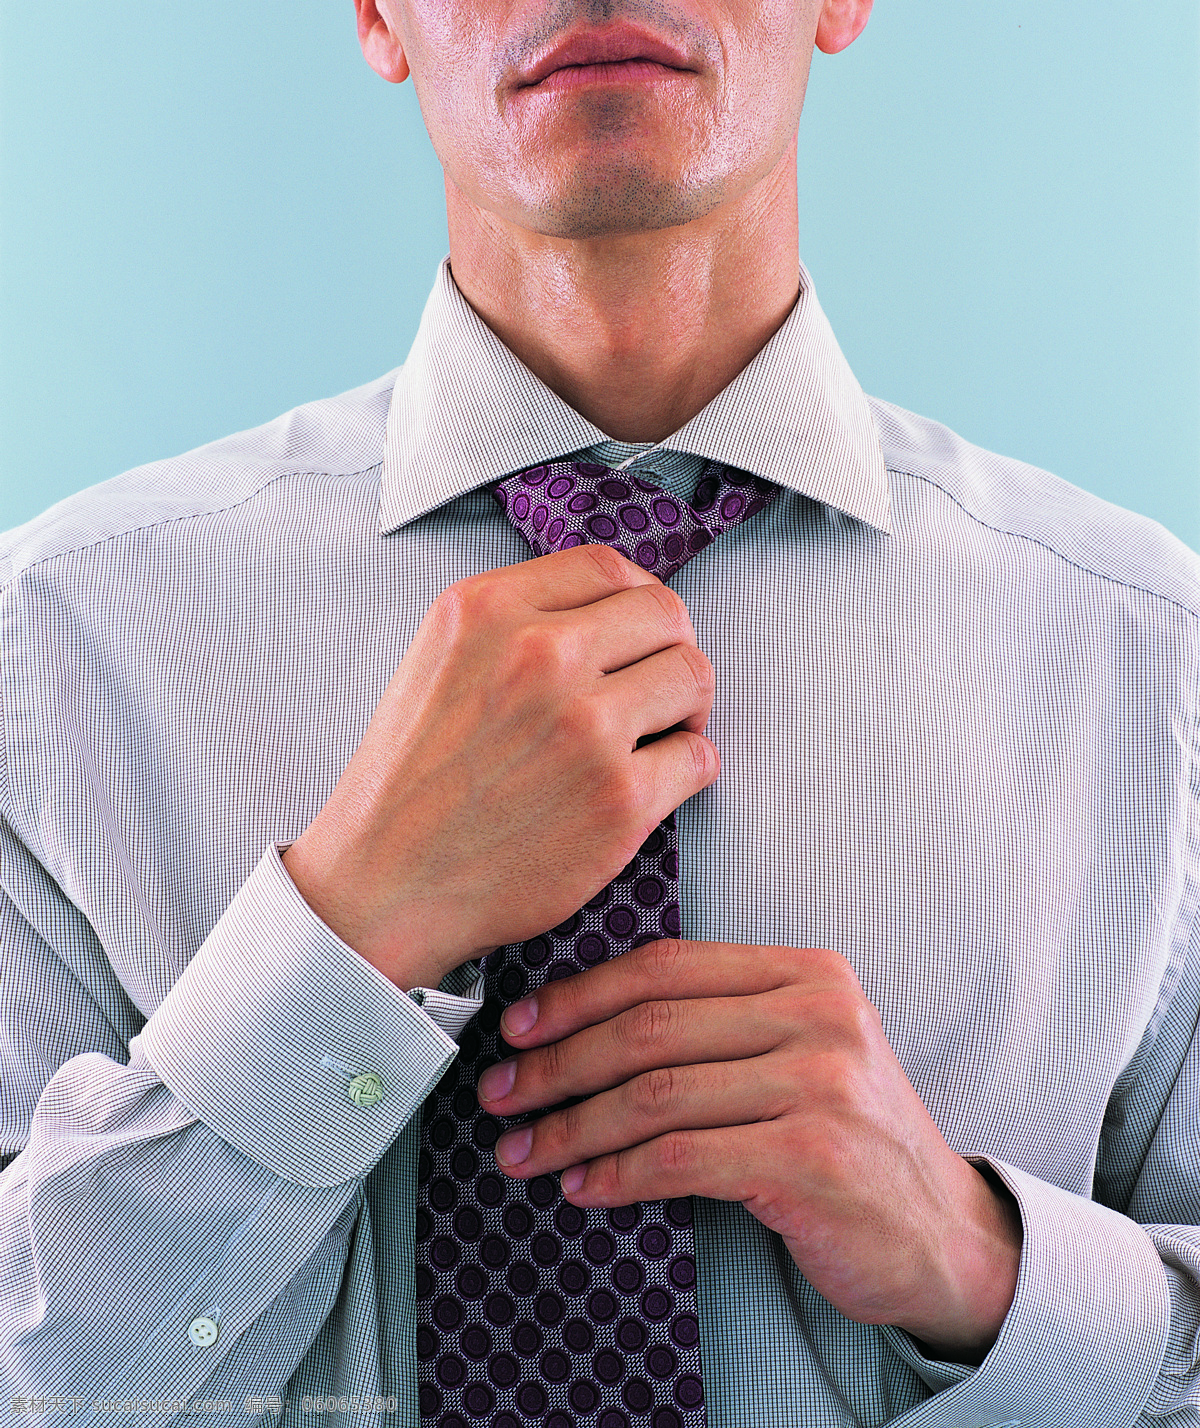 领带 商务 男性 办公室职员 职业人物 商务人士 职场 白领 打领带 商务男性 成功男人 摄影图 高清图片 人物图片